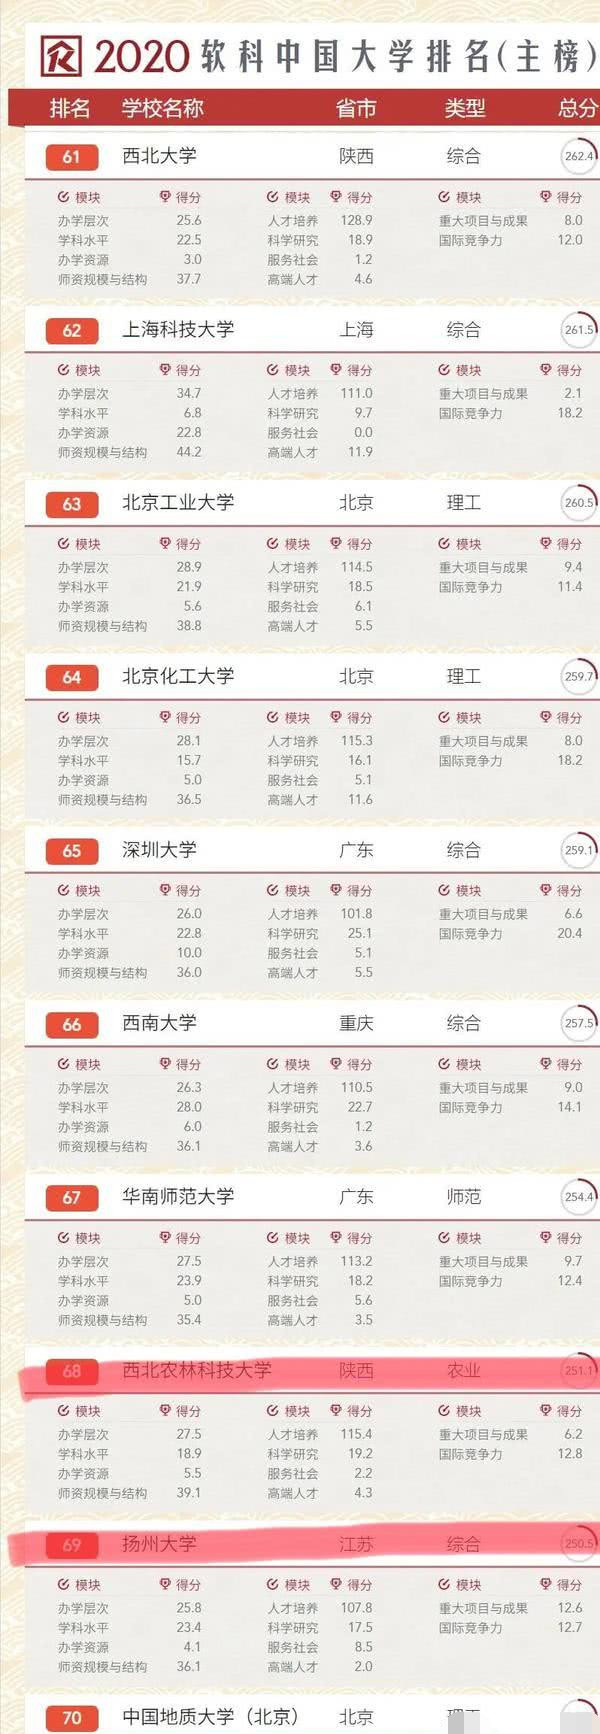 中国大学排名 一所985大学排名第六十八 落后于多所普通学校